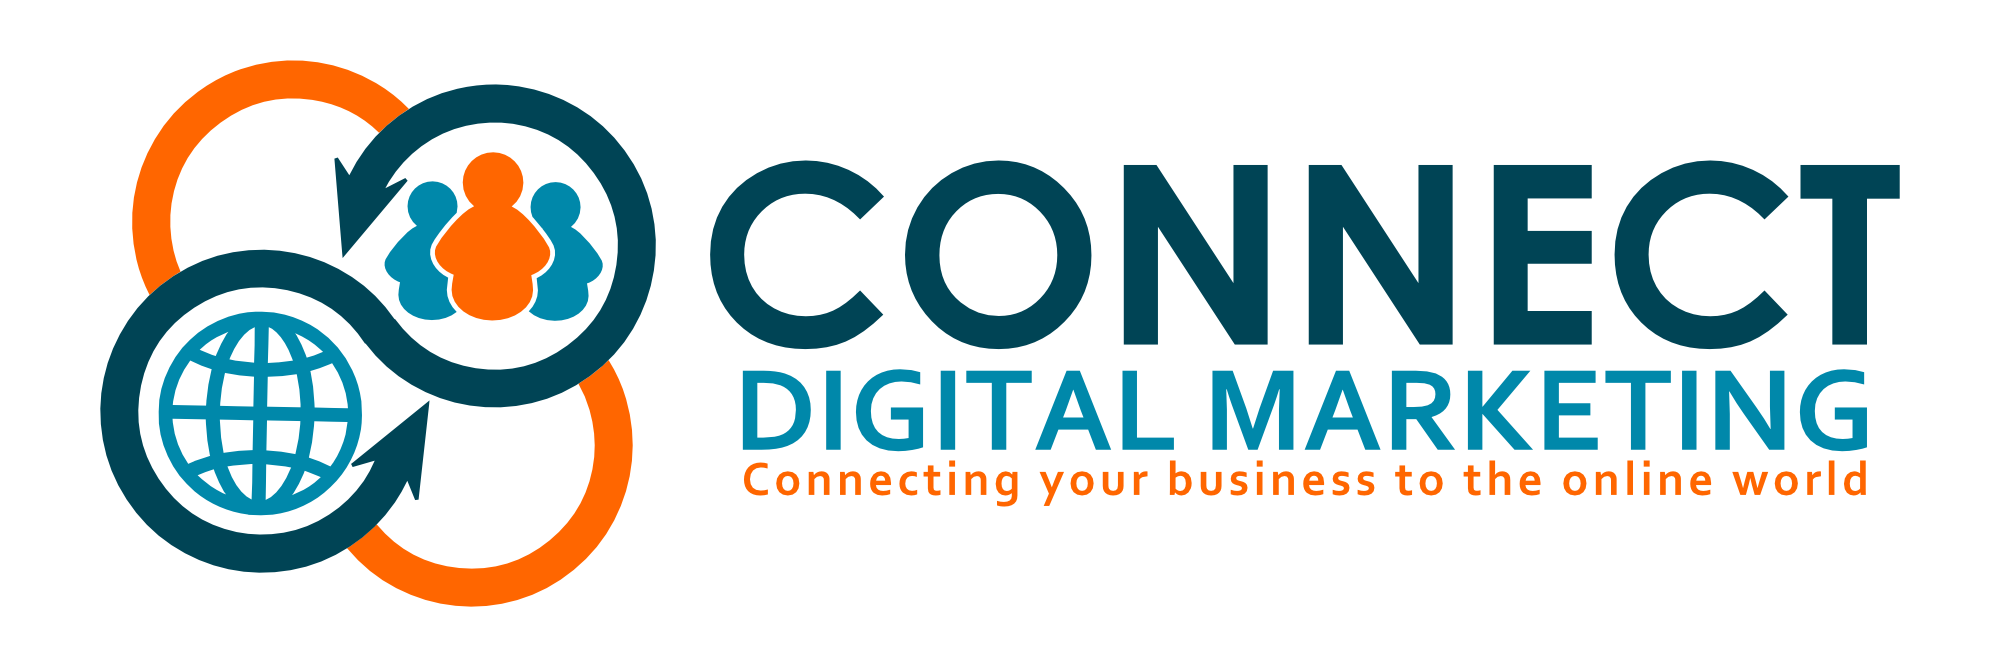 Digital marketing Logos